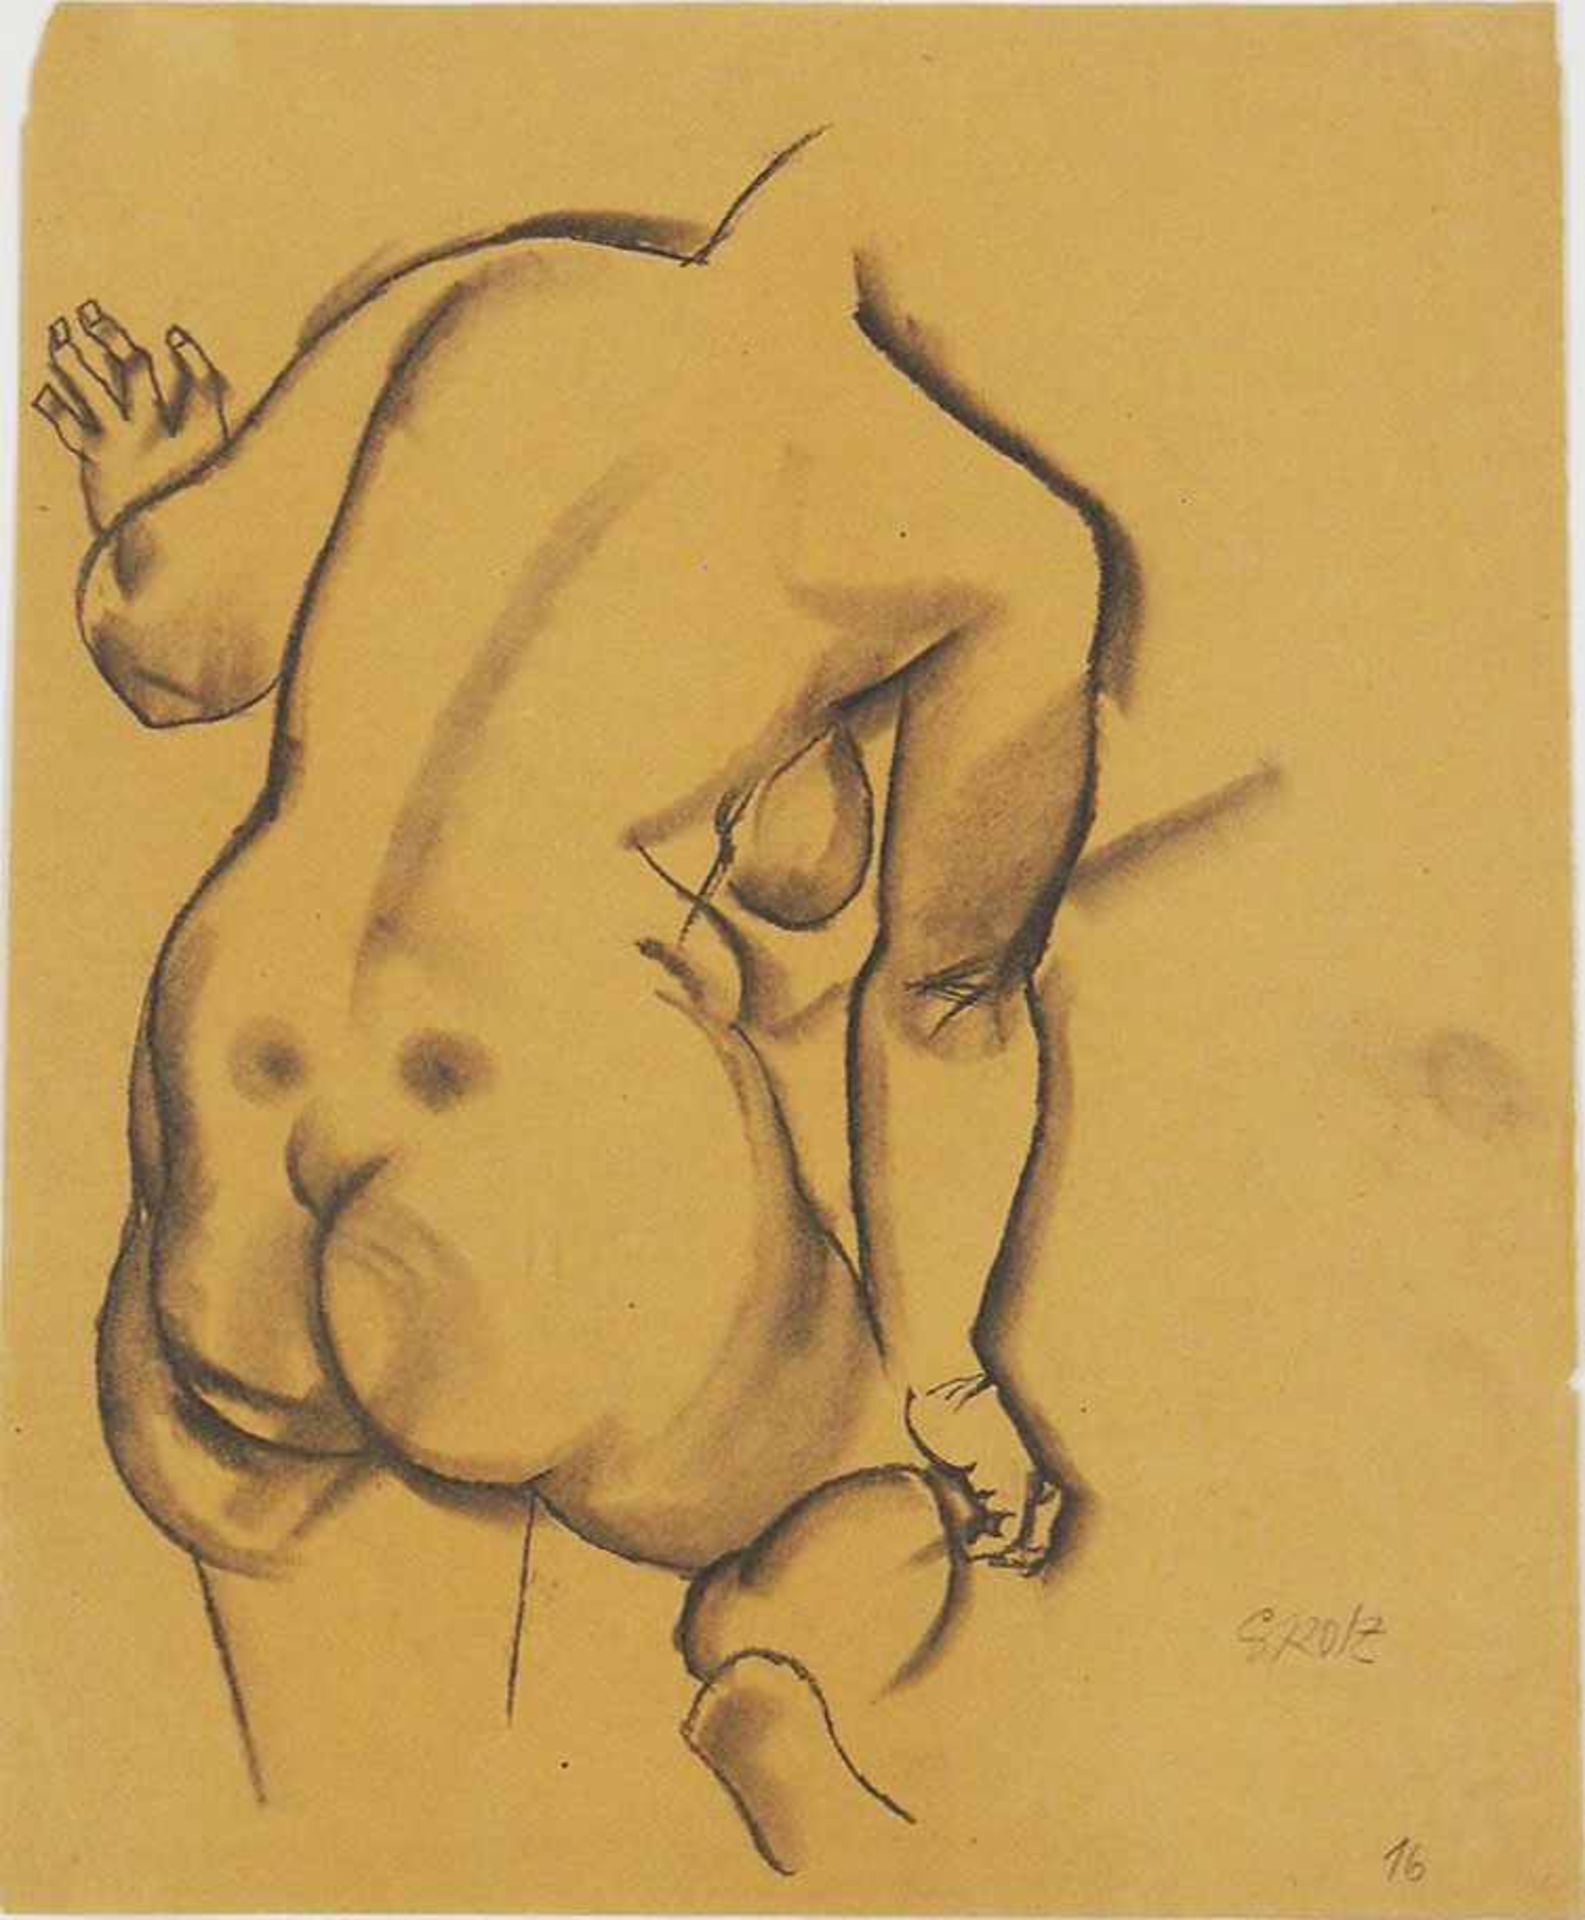 GROSZ, George1893-1959Weiblicher Rückenaktschwarze Kreide, gewischt auf Papier, signiert unten